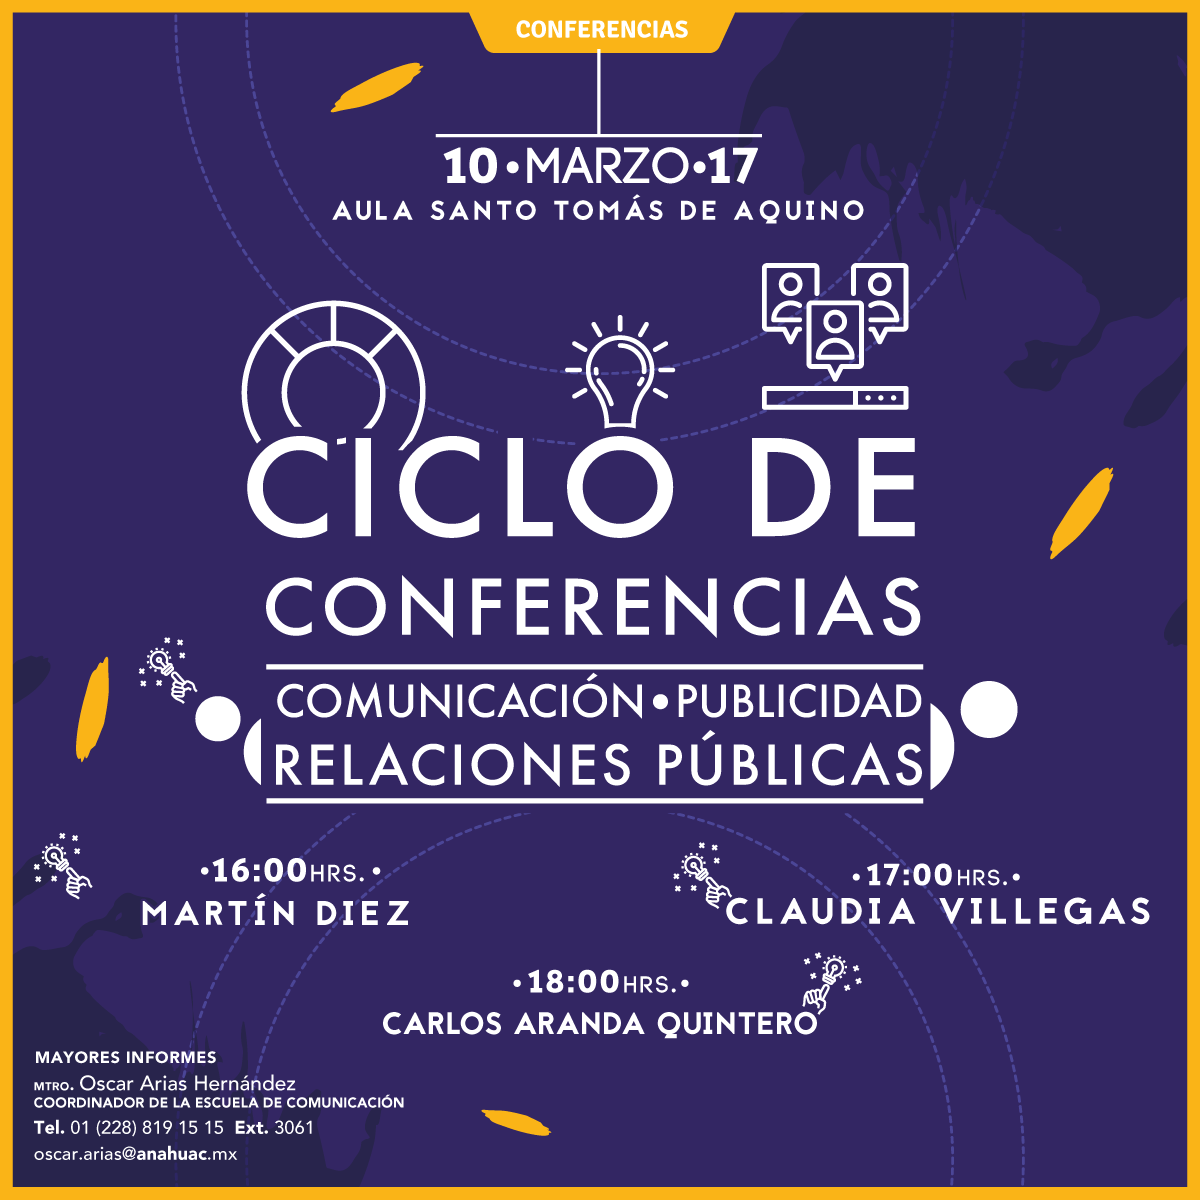 Ciclo de Conferencias: Comunicación, Publicidad y Relaciones Públicas